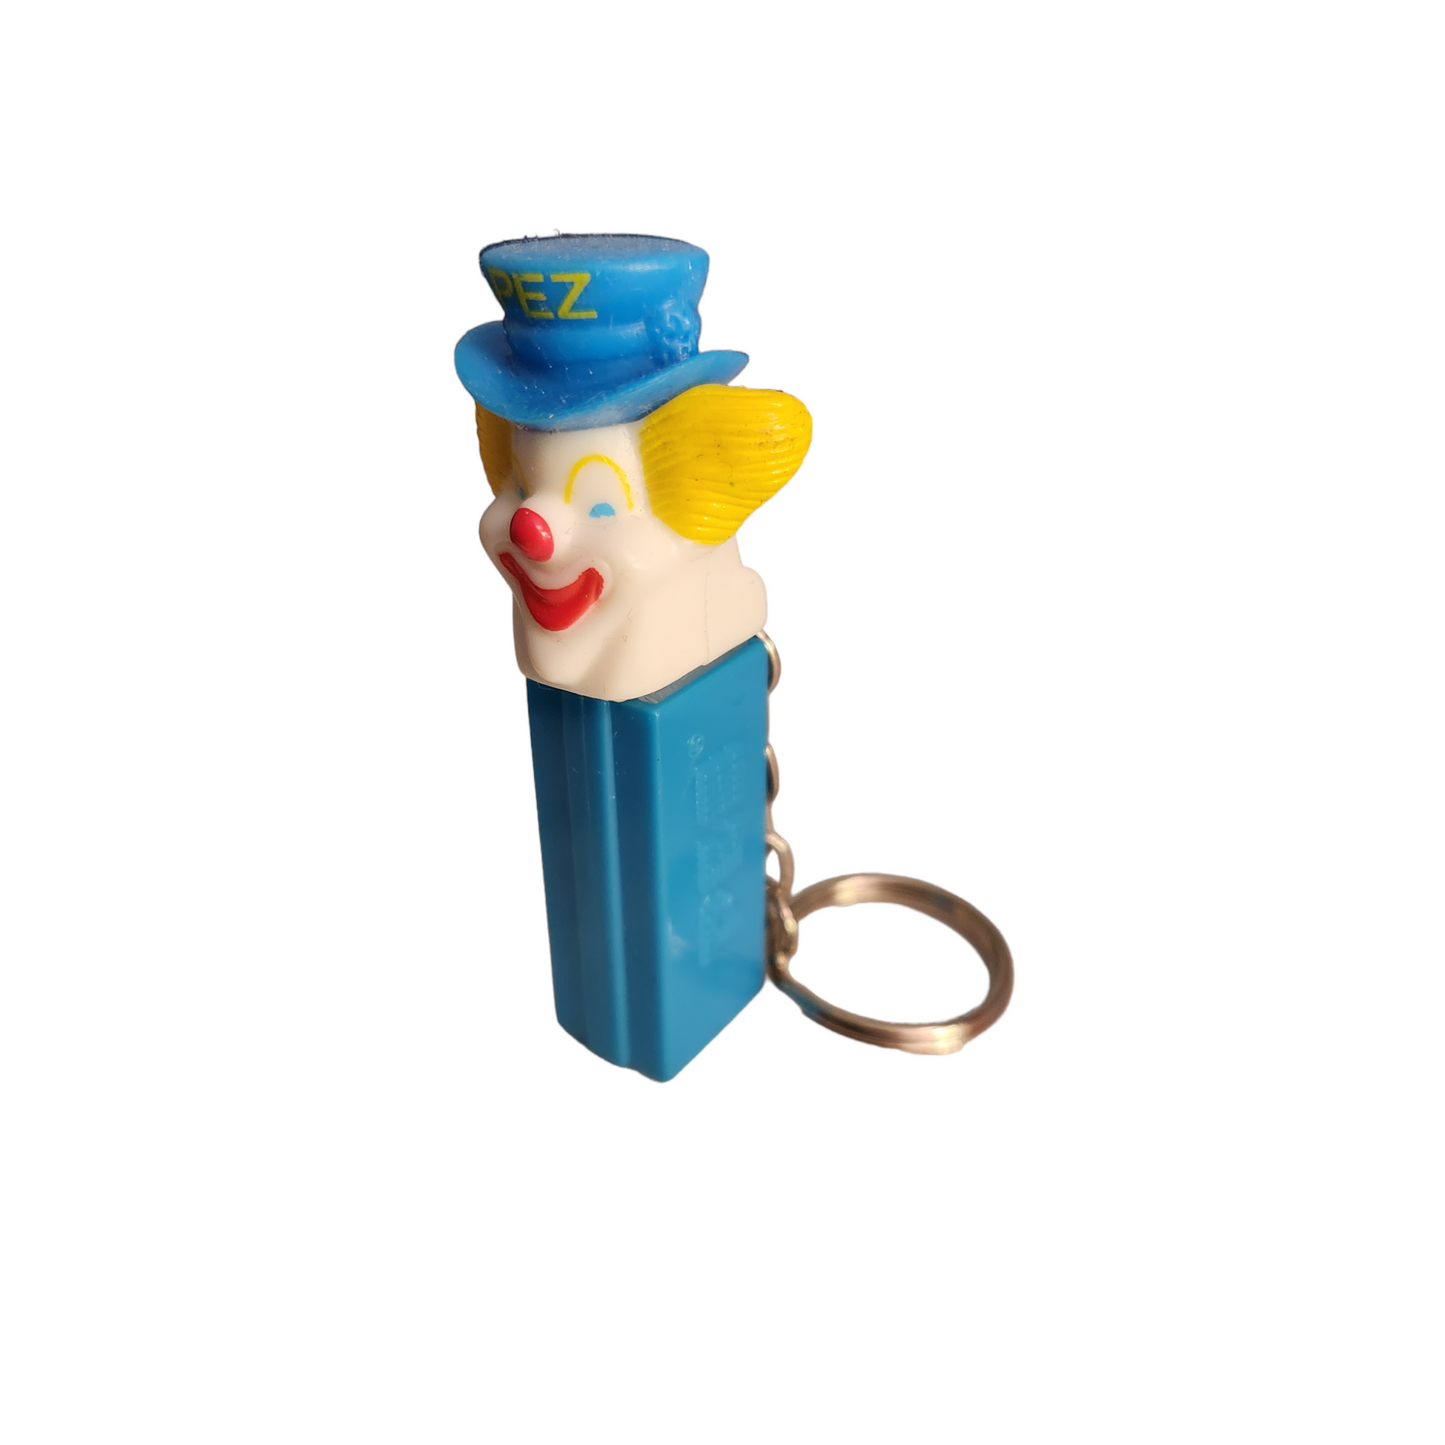 Pez Dispenser Mini Keychain Bozo the Clown